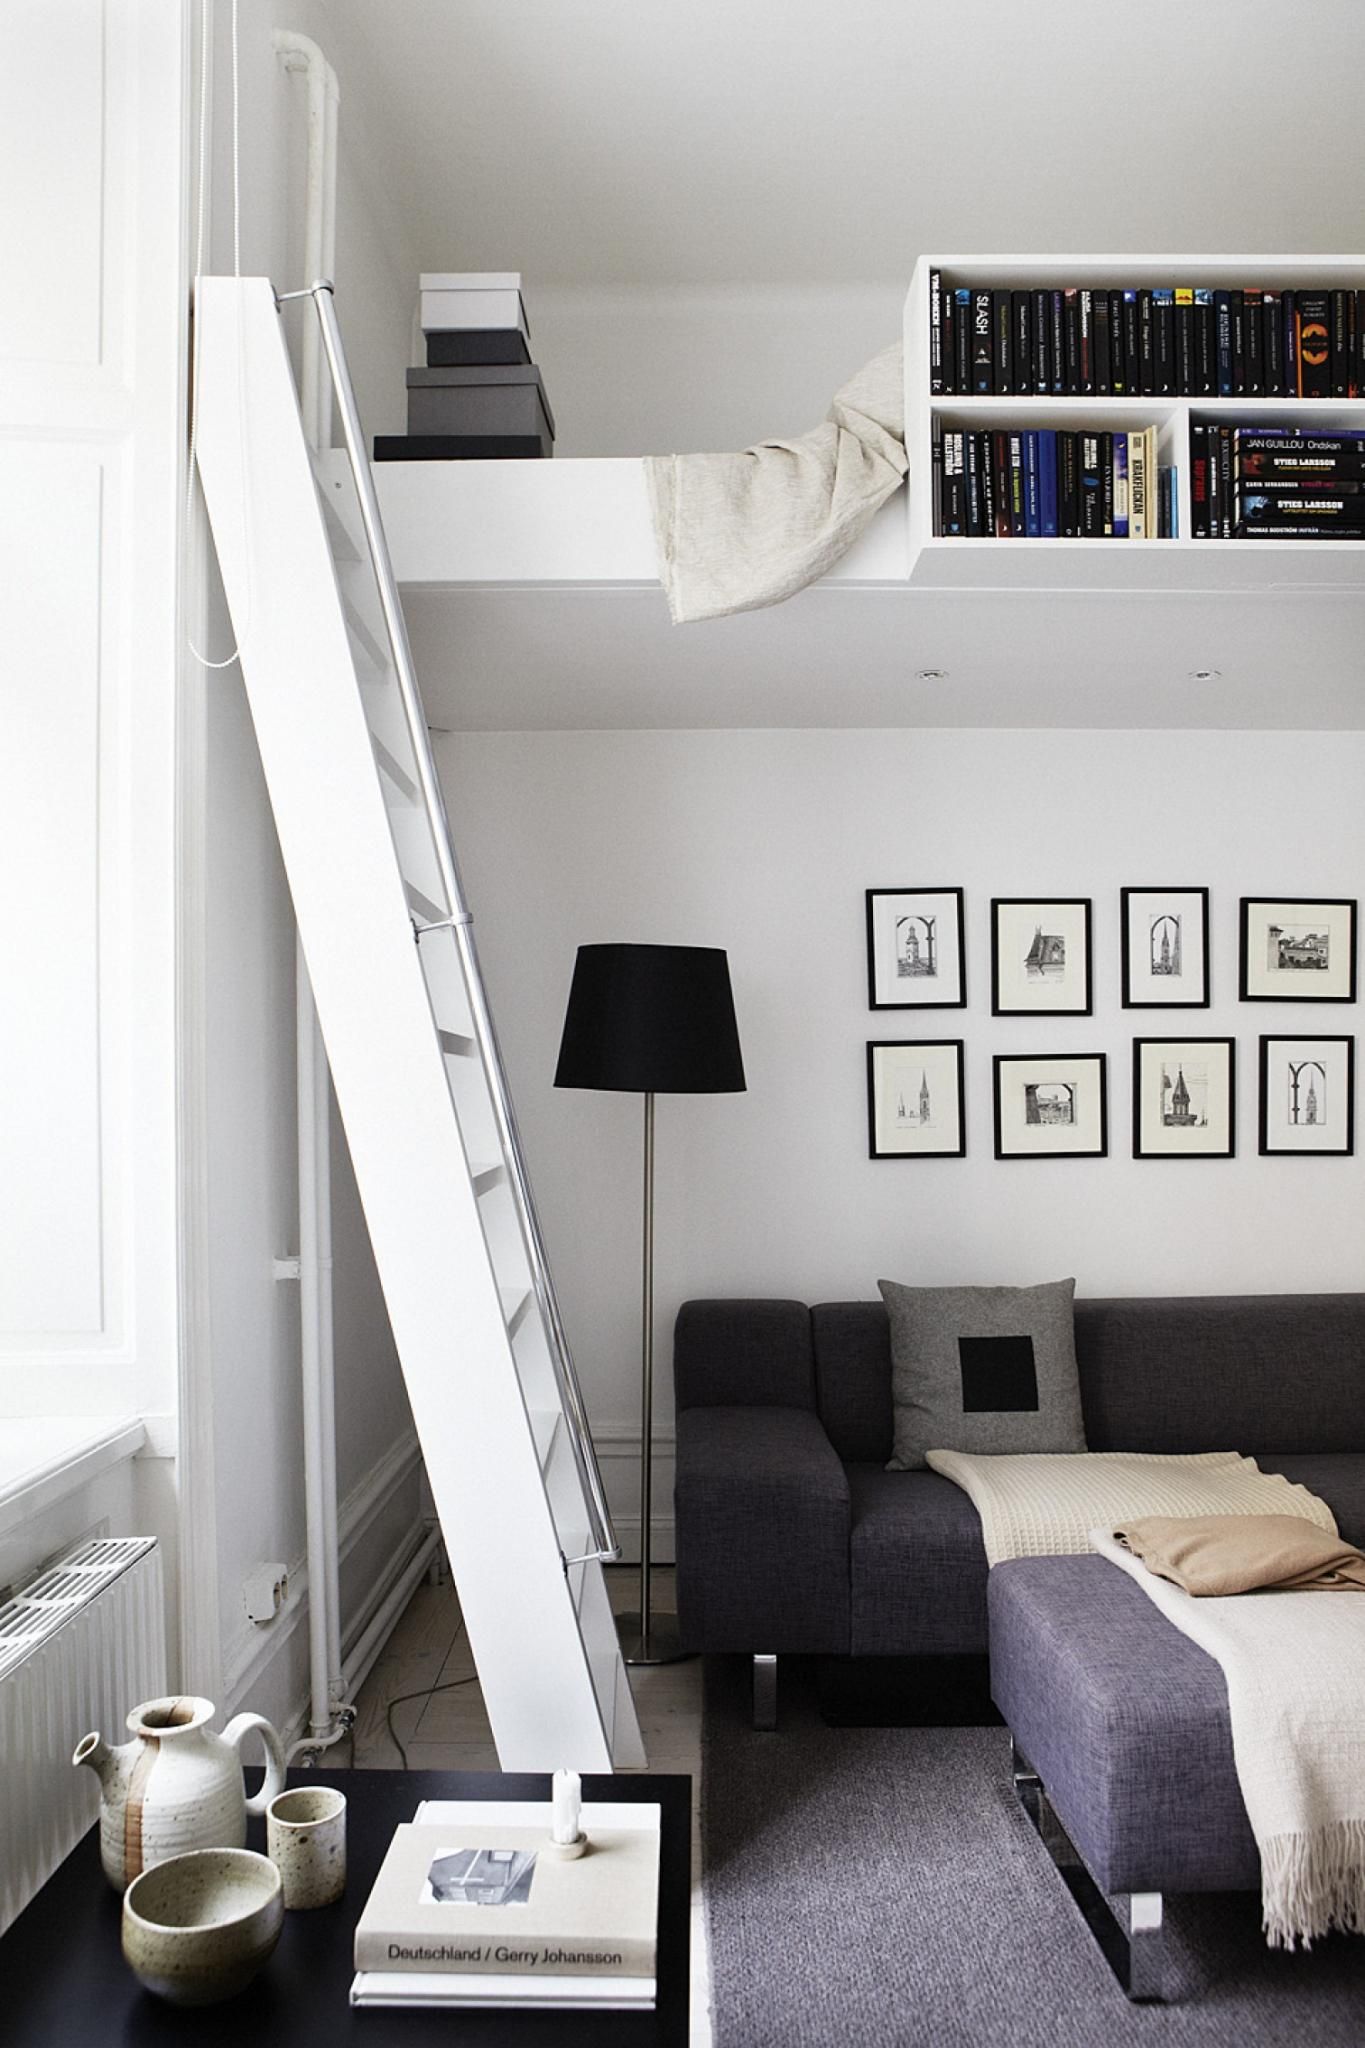 Tùy vào sở thích của người sử dụng mà việc lựa chọn kiểu cách thiết kế nội thất cho căn hộ diện tích nhỏ cũng khác nhau